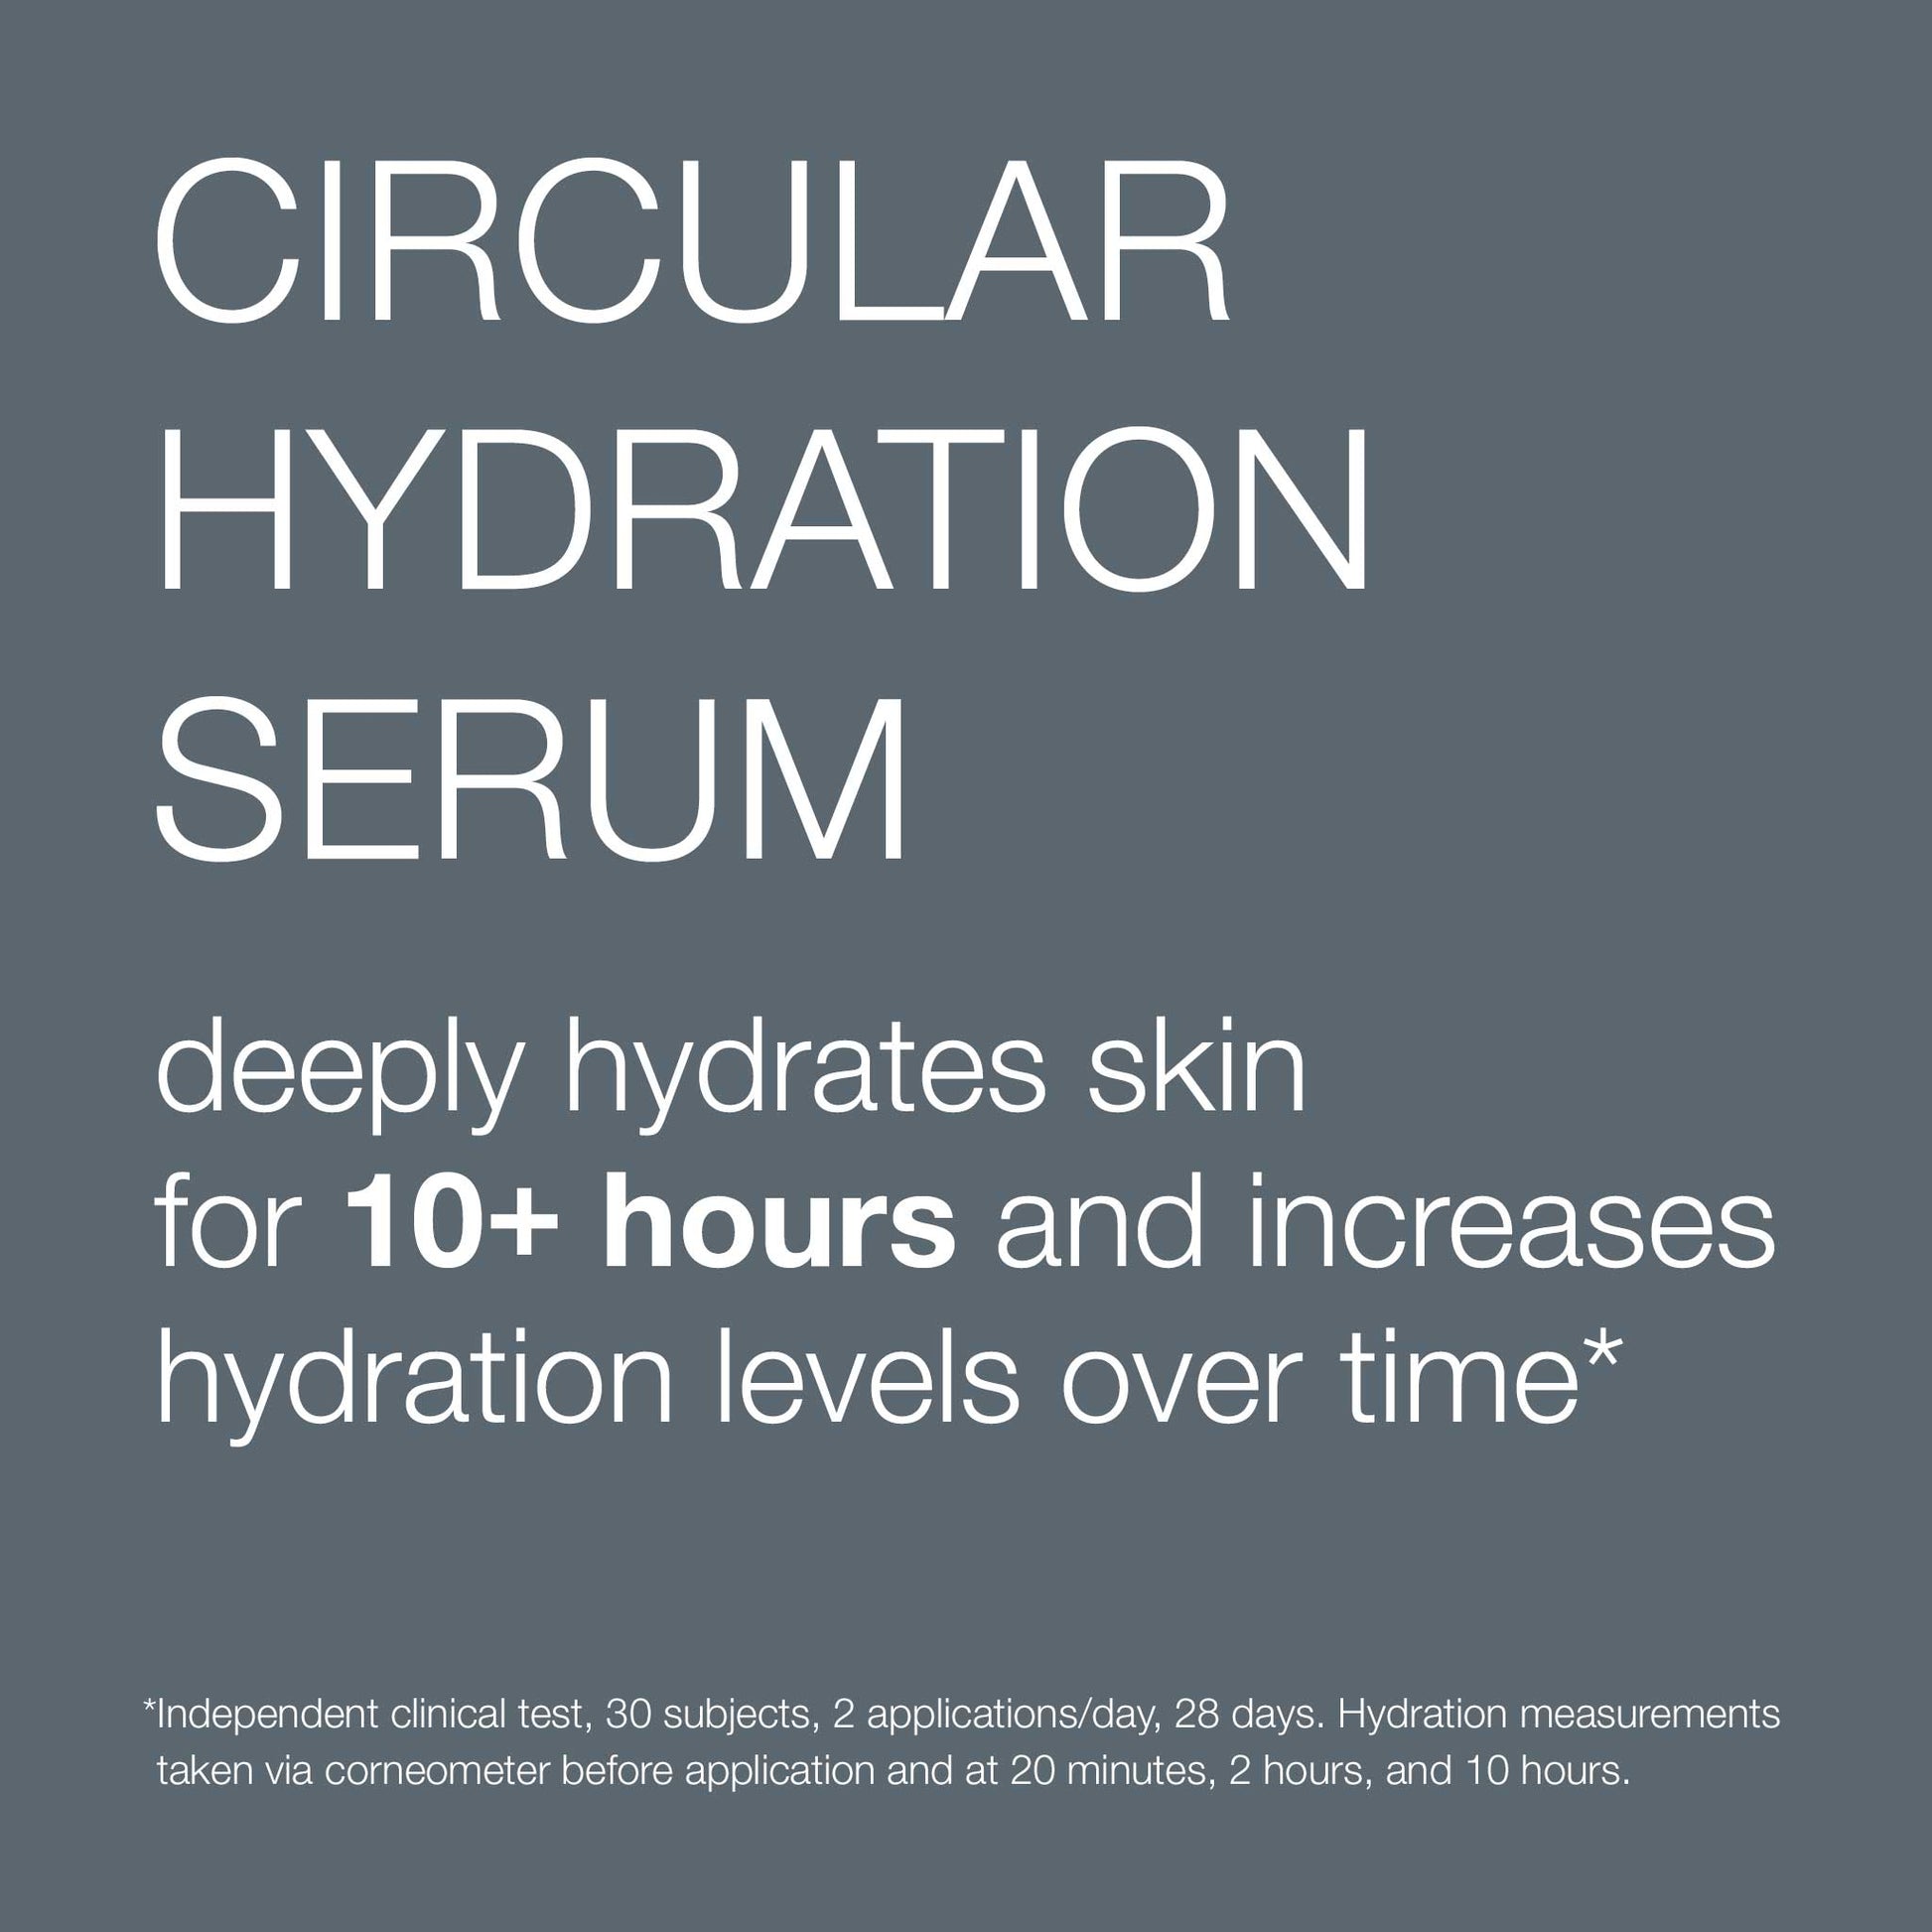 circular hydration serum claim